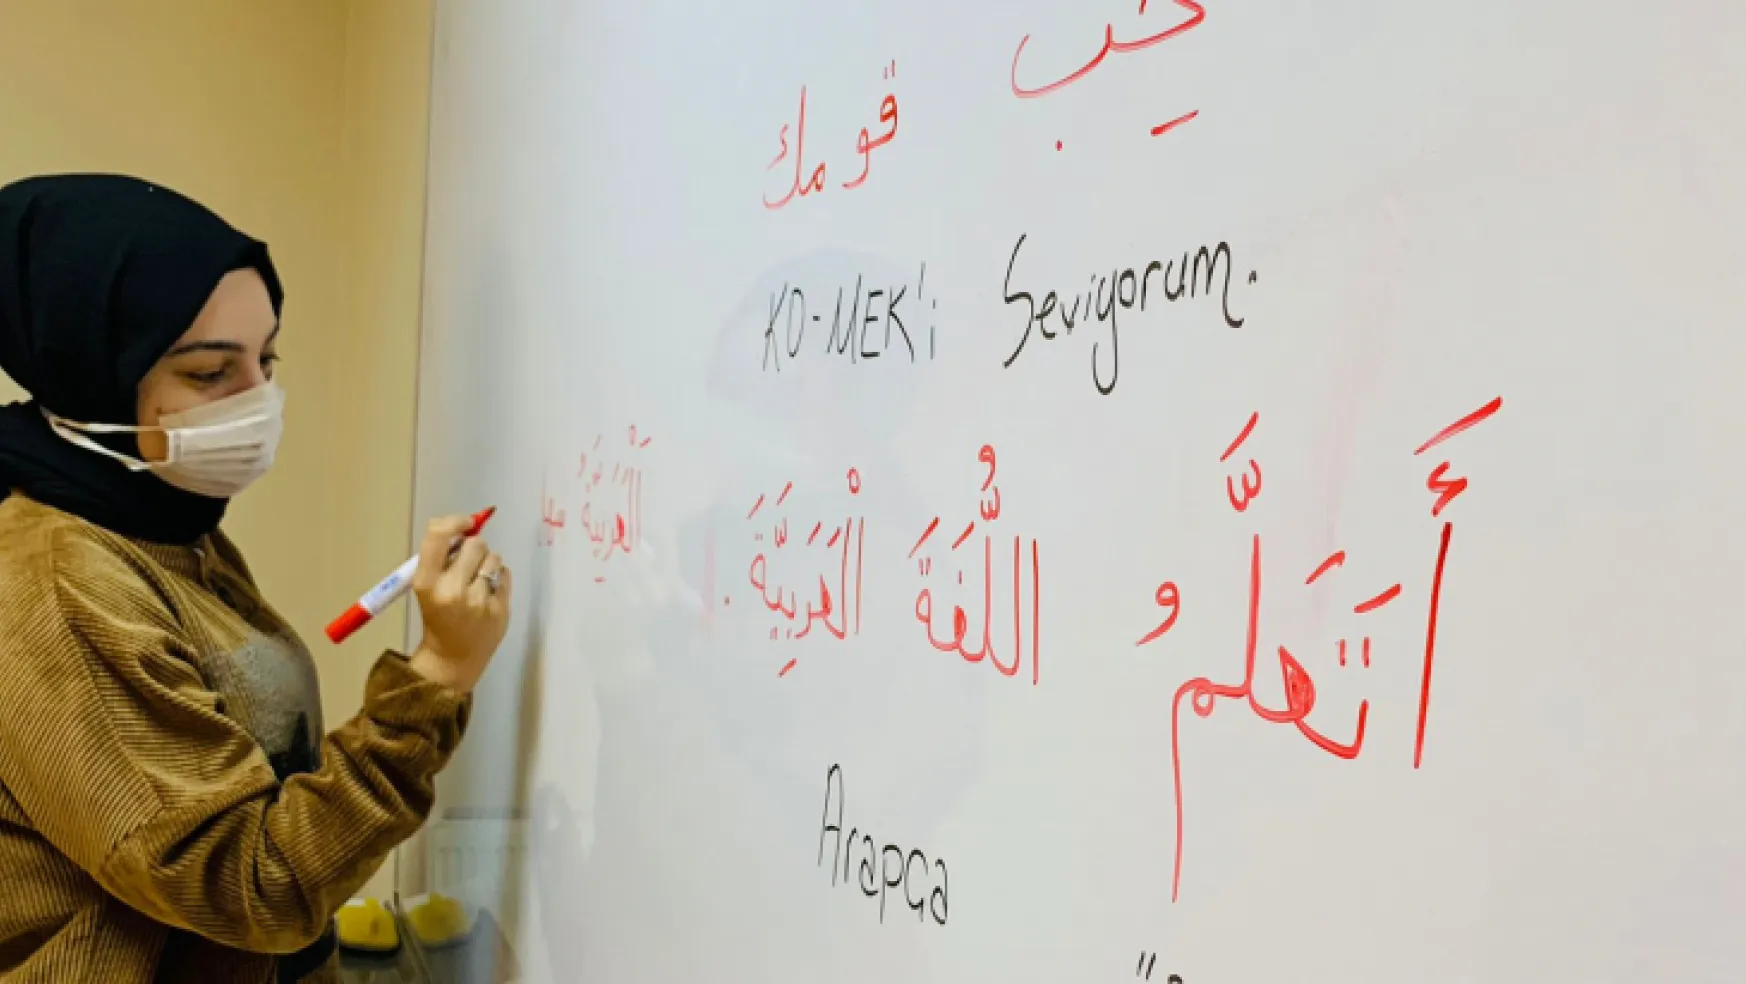 Neden KO-MEK ile Arapça öğrenmeliyim?